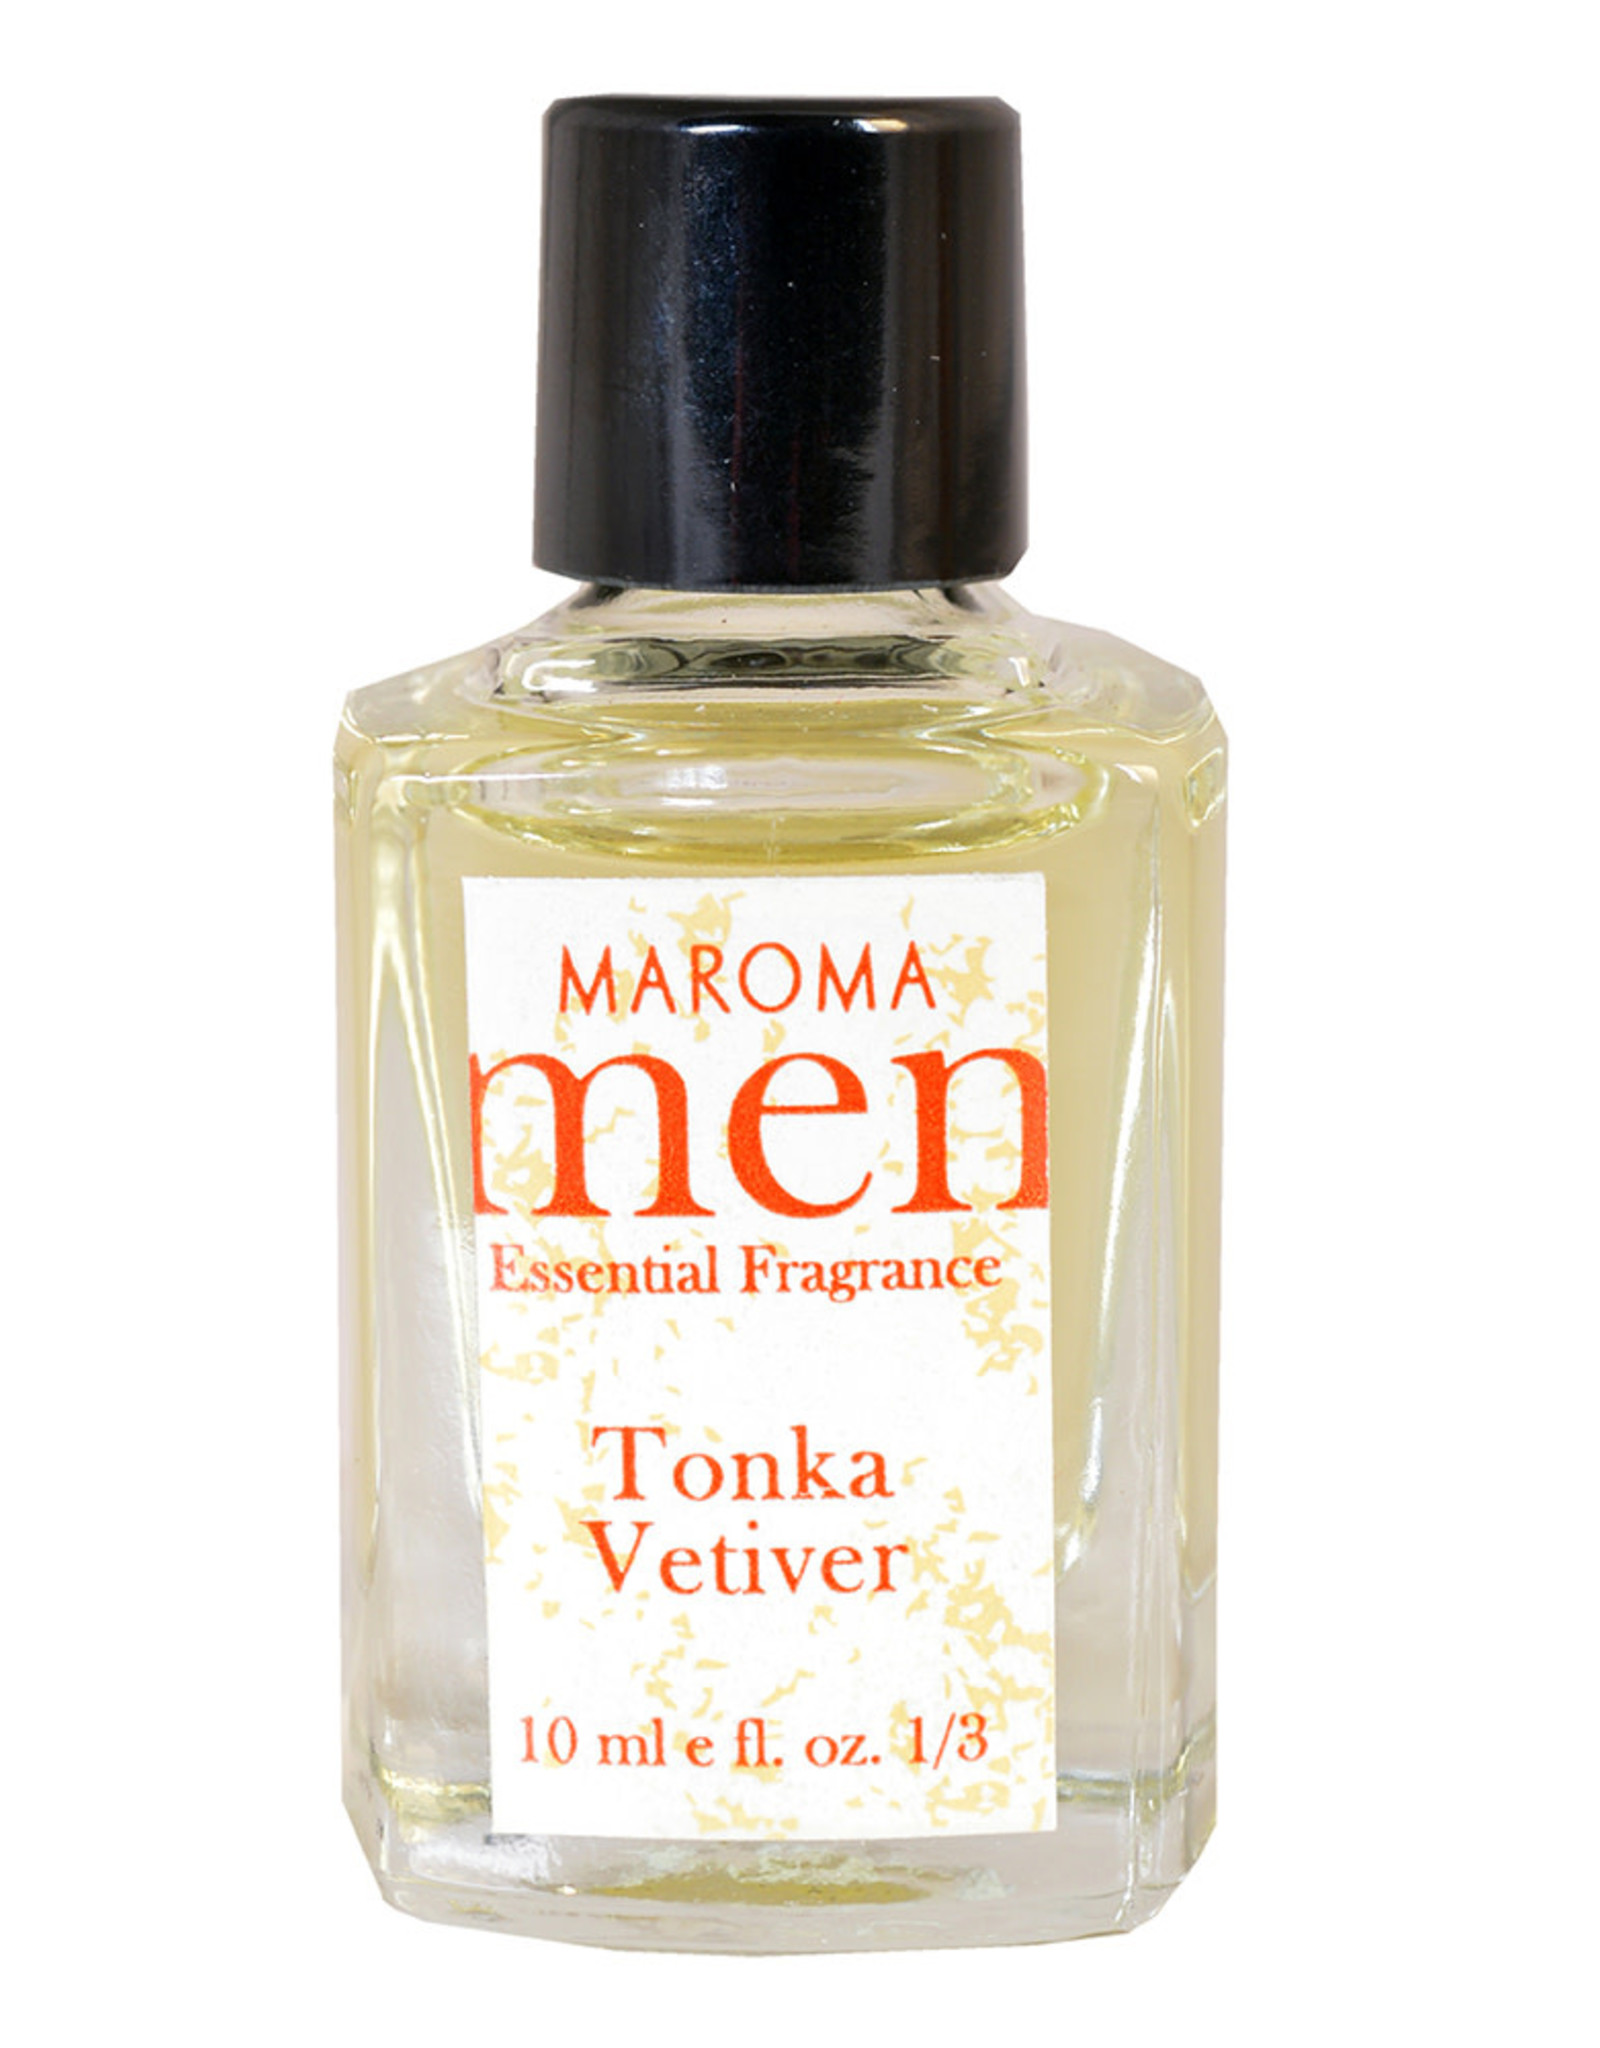 Maroma Tonka Vetiver Men's Fragrance Oil